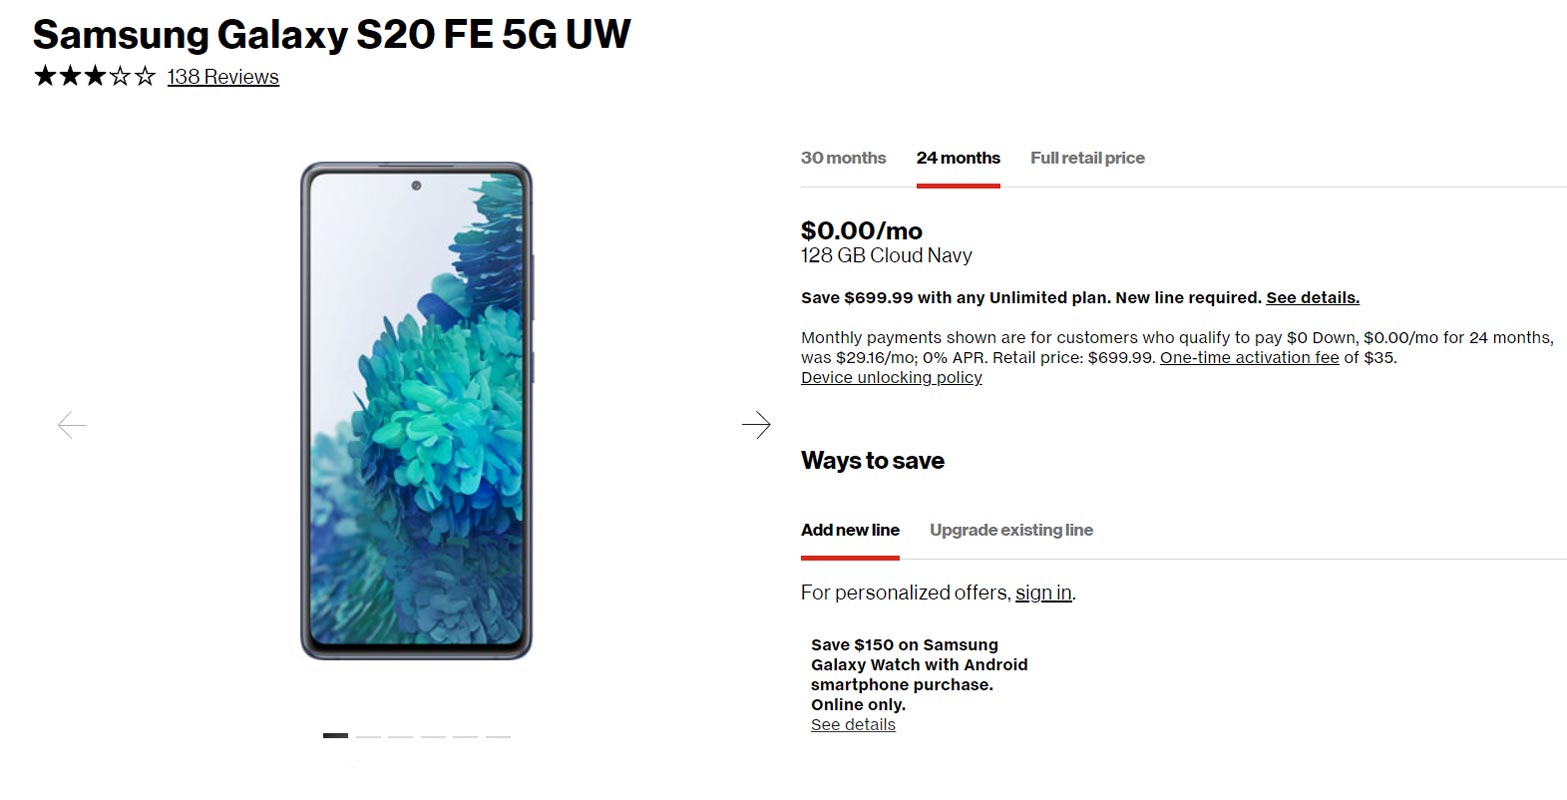 Samsung Galaxy S20 FE 5G UW gratis con Verizon Wireless Nueva conexión